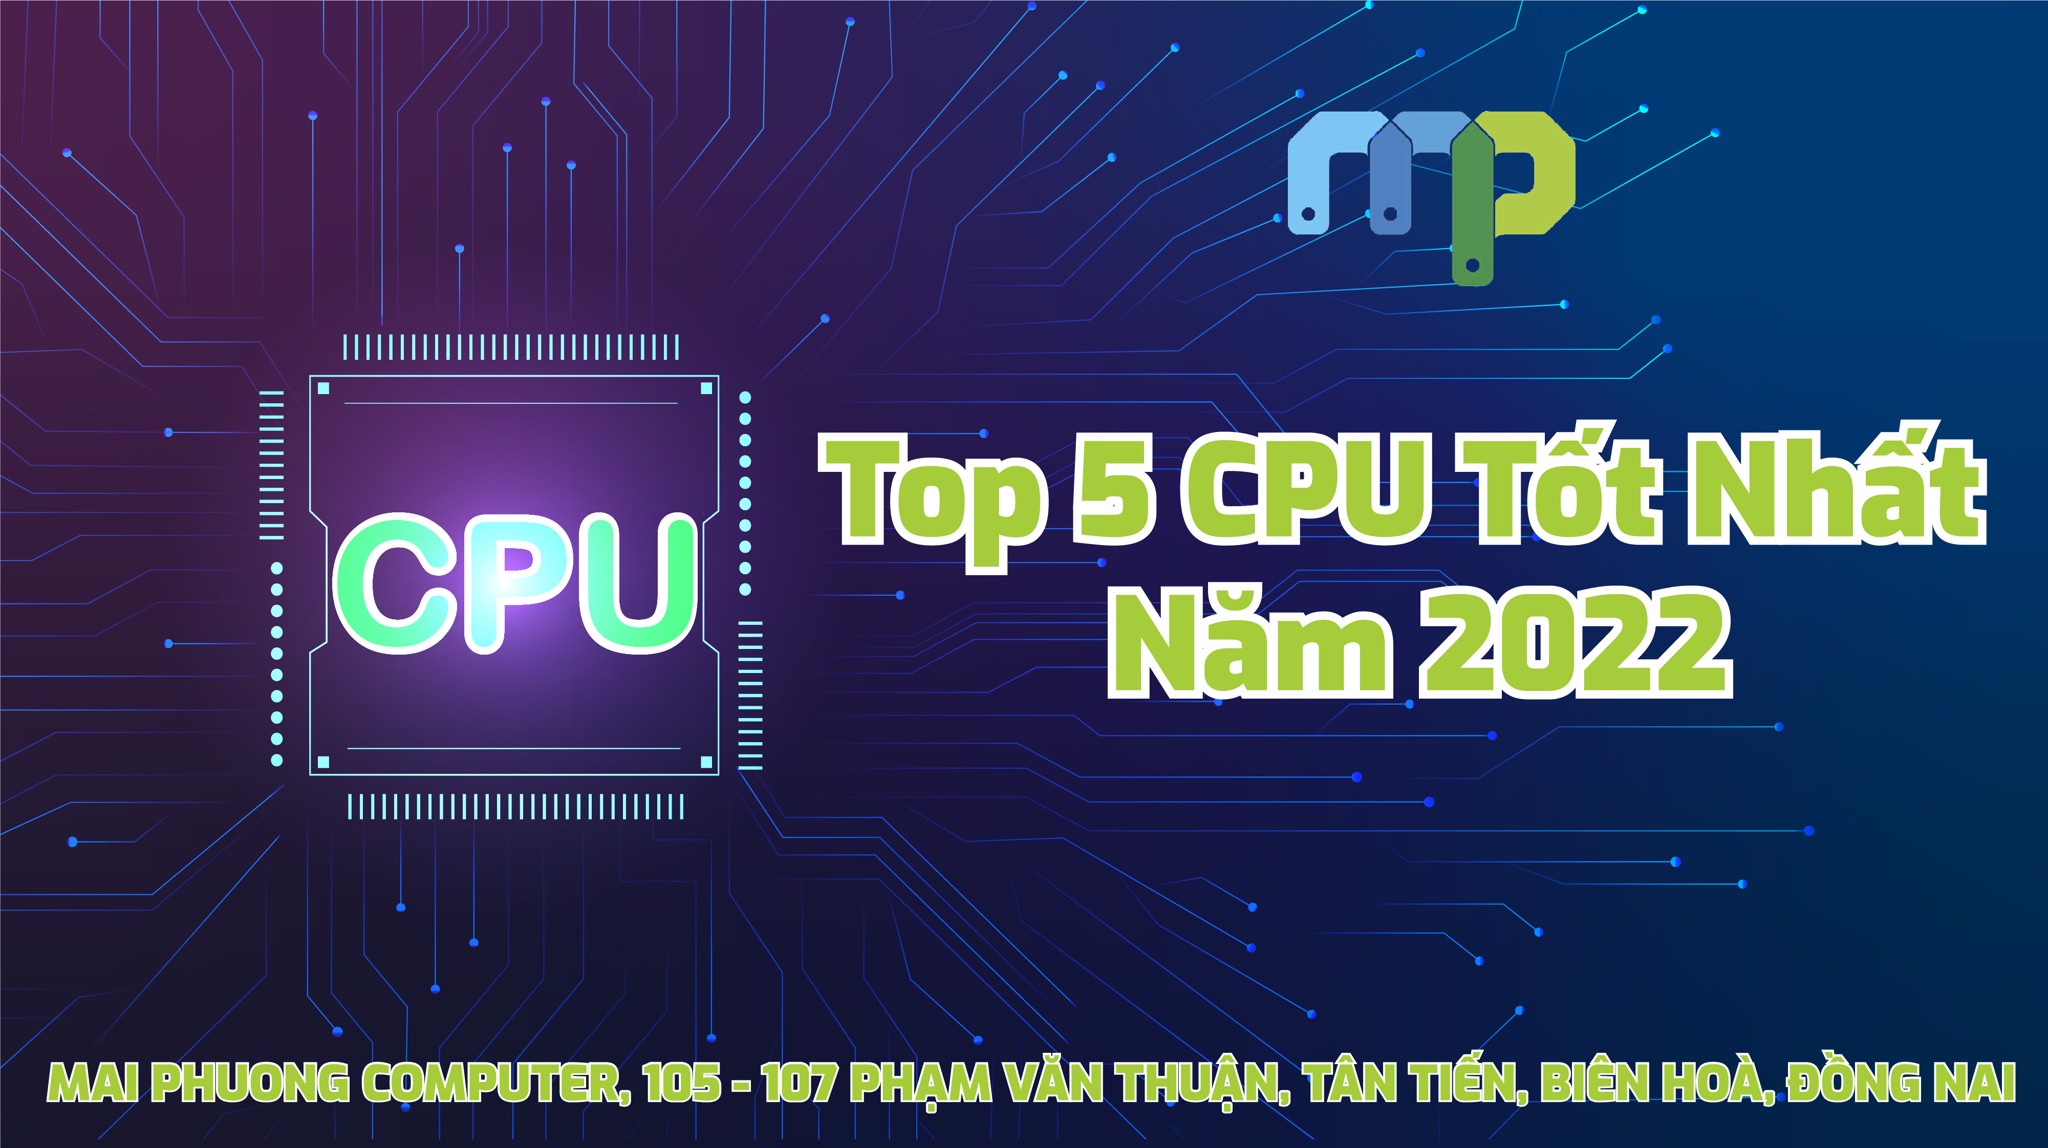 Top CPU Chơi Game Tốt Nhất Năm 2022